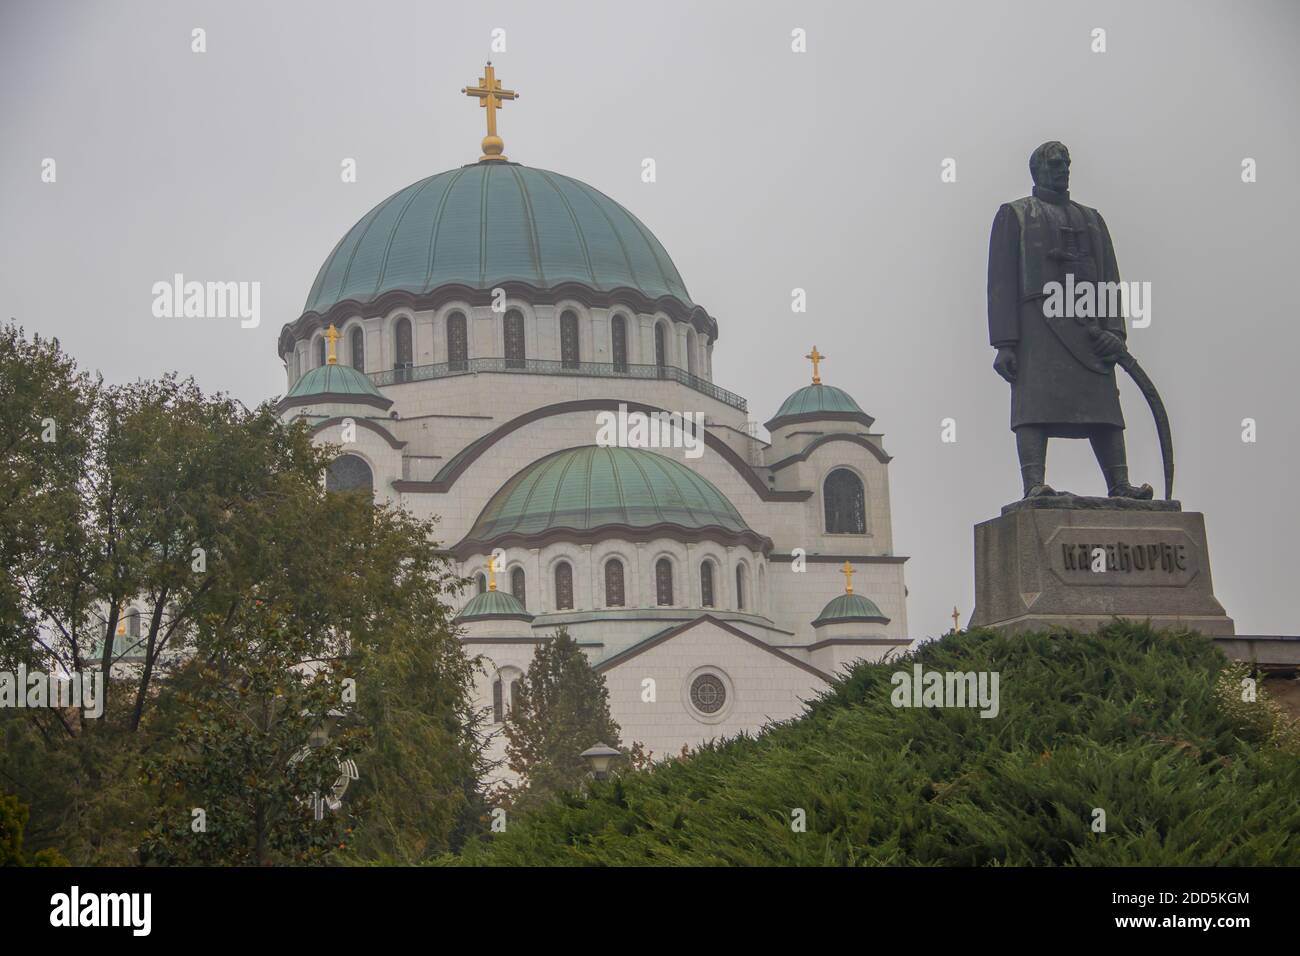 Tempio di San Sava a Belgrado, marmo della religione ortodossa balcanica, uno dei più grandi templi del mondo, la cosiddetta nuova Hagia Sophia Foto Stock